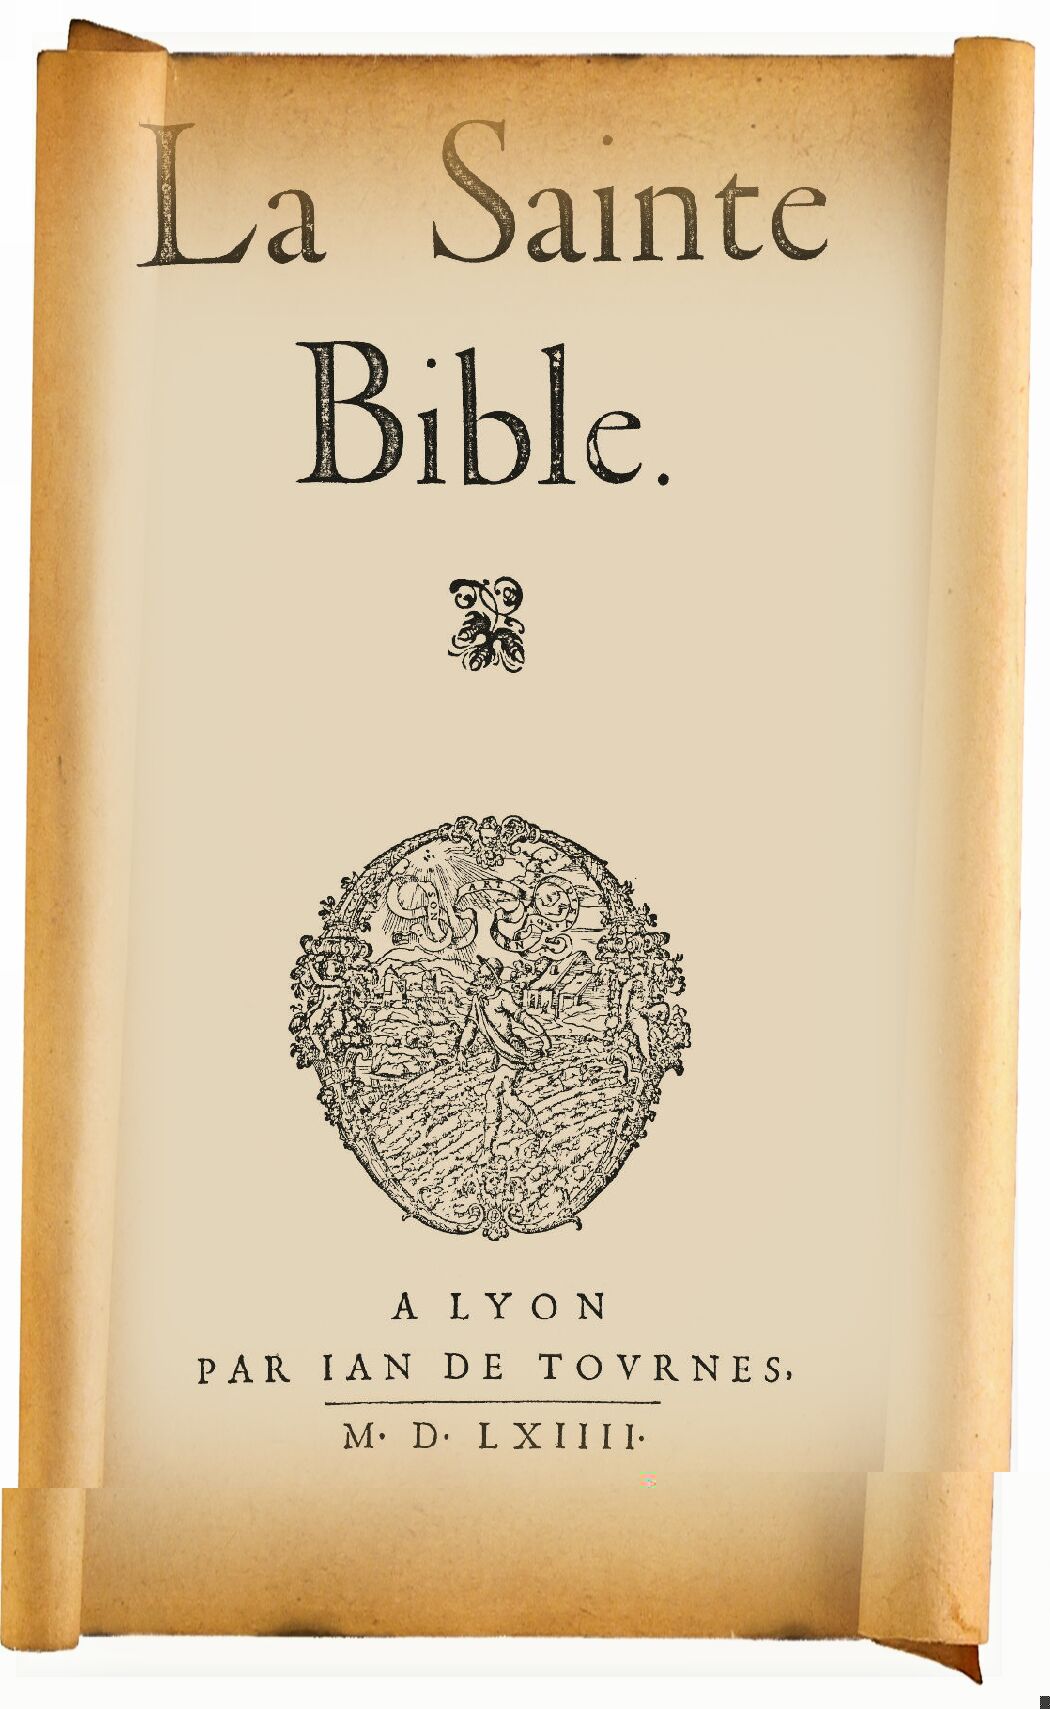 La Sainte Bible de l'Épée de Calvin 1564 avec notes marginales publiée par Jean de Tournes